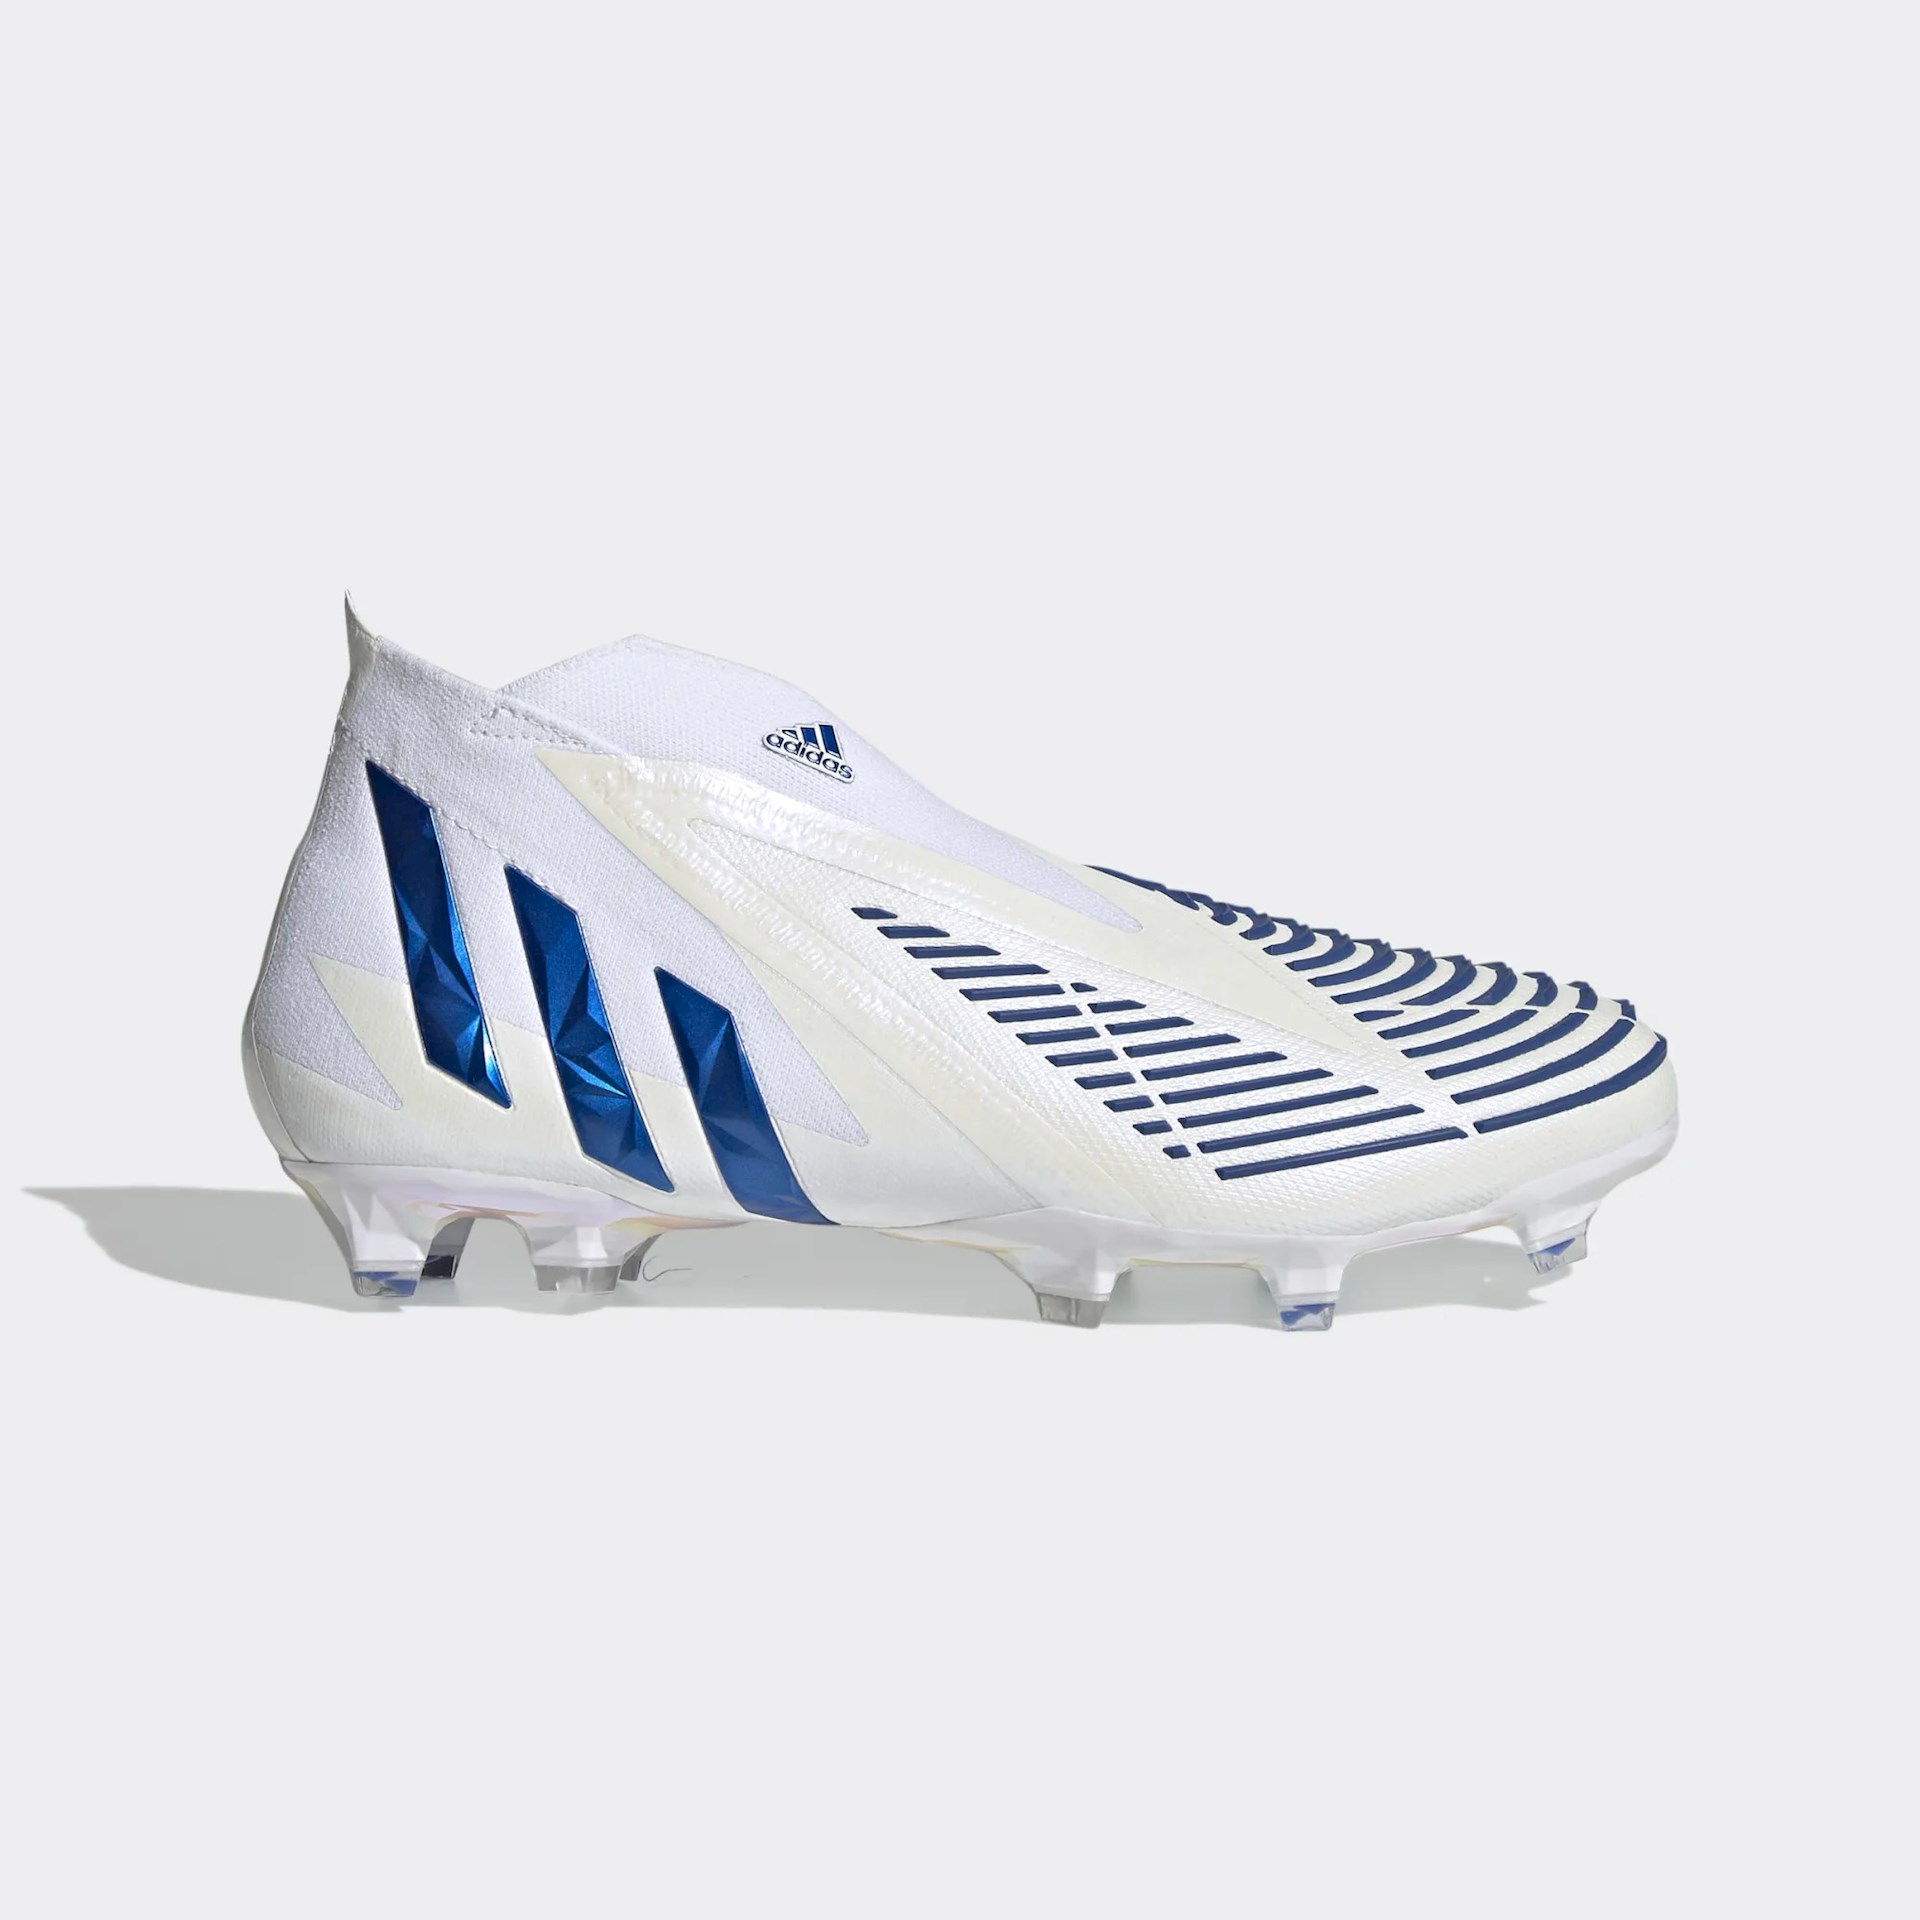 adidas Predator Edge voetbalschoenen - Wit/Blauw